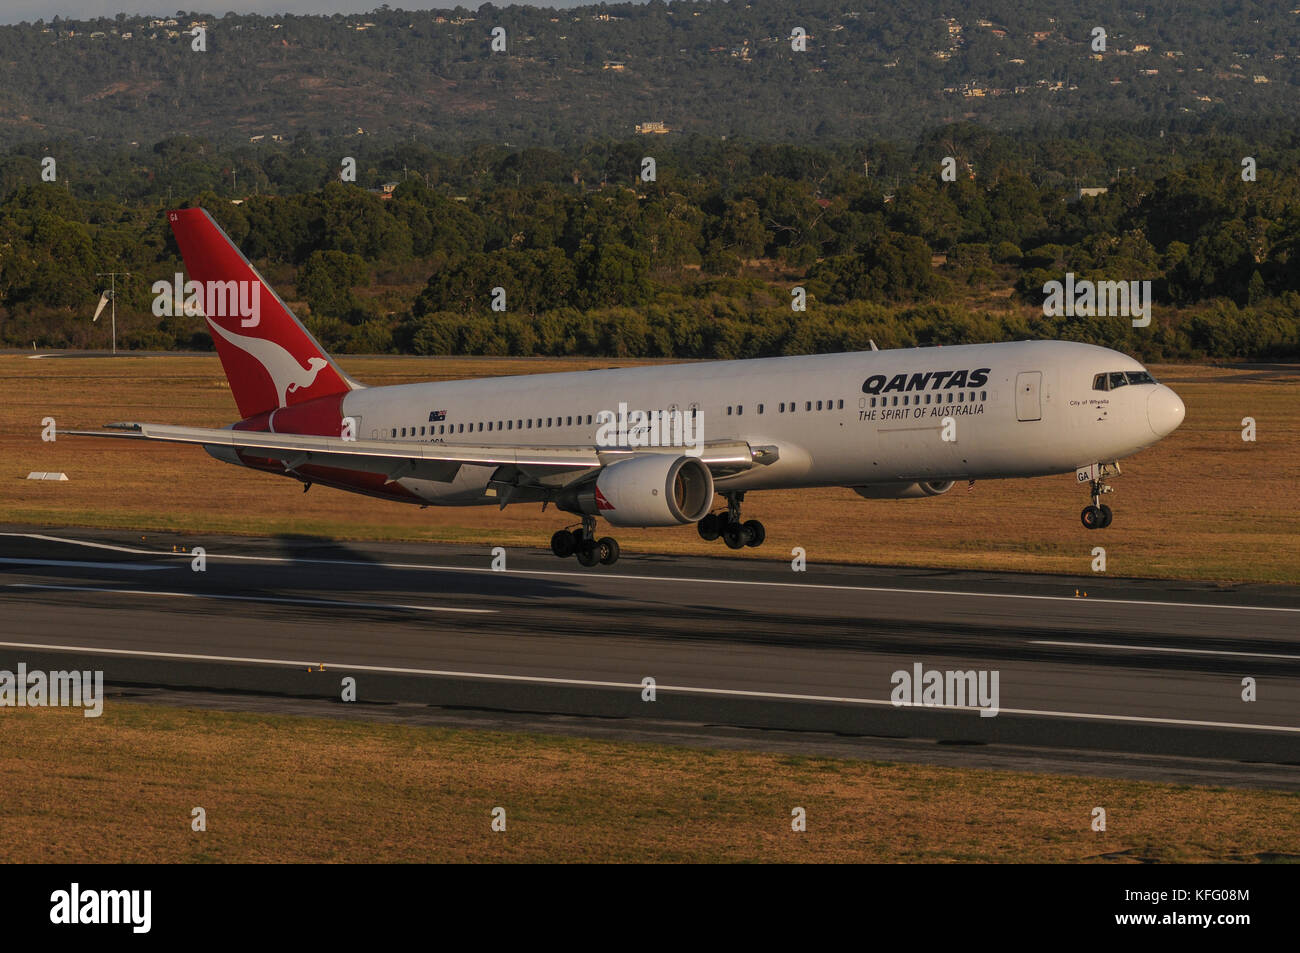 Air-sol, côté semi-shot sur un Boeing 767 de Qantas sur la piste d'atterrissage des aéronefs. n'est qu'en vol stationnaire au-dessus du sol. Banque D'Images